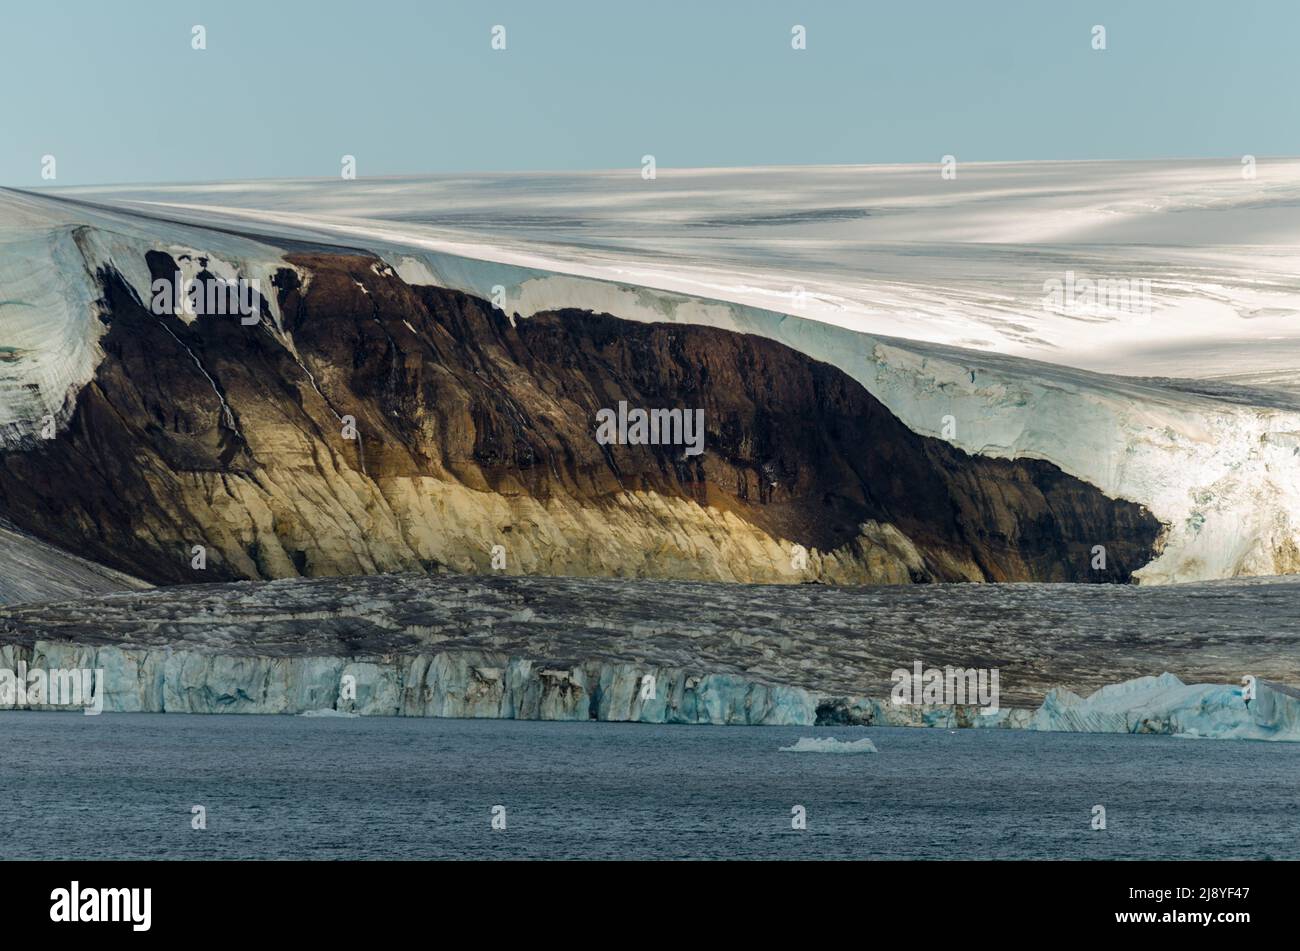 La remise en état de la glace révèle une falaise de roche sédimentaire d'âge jurassique recouverte de lave crétacée dans le détroit américain, Land Franz Josef, Russie Banque D'Images